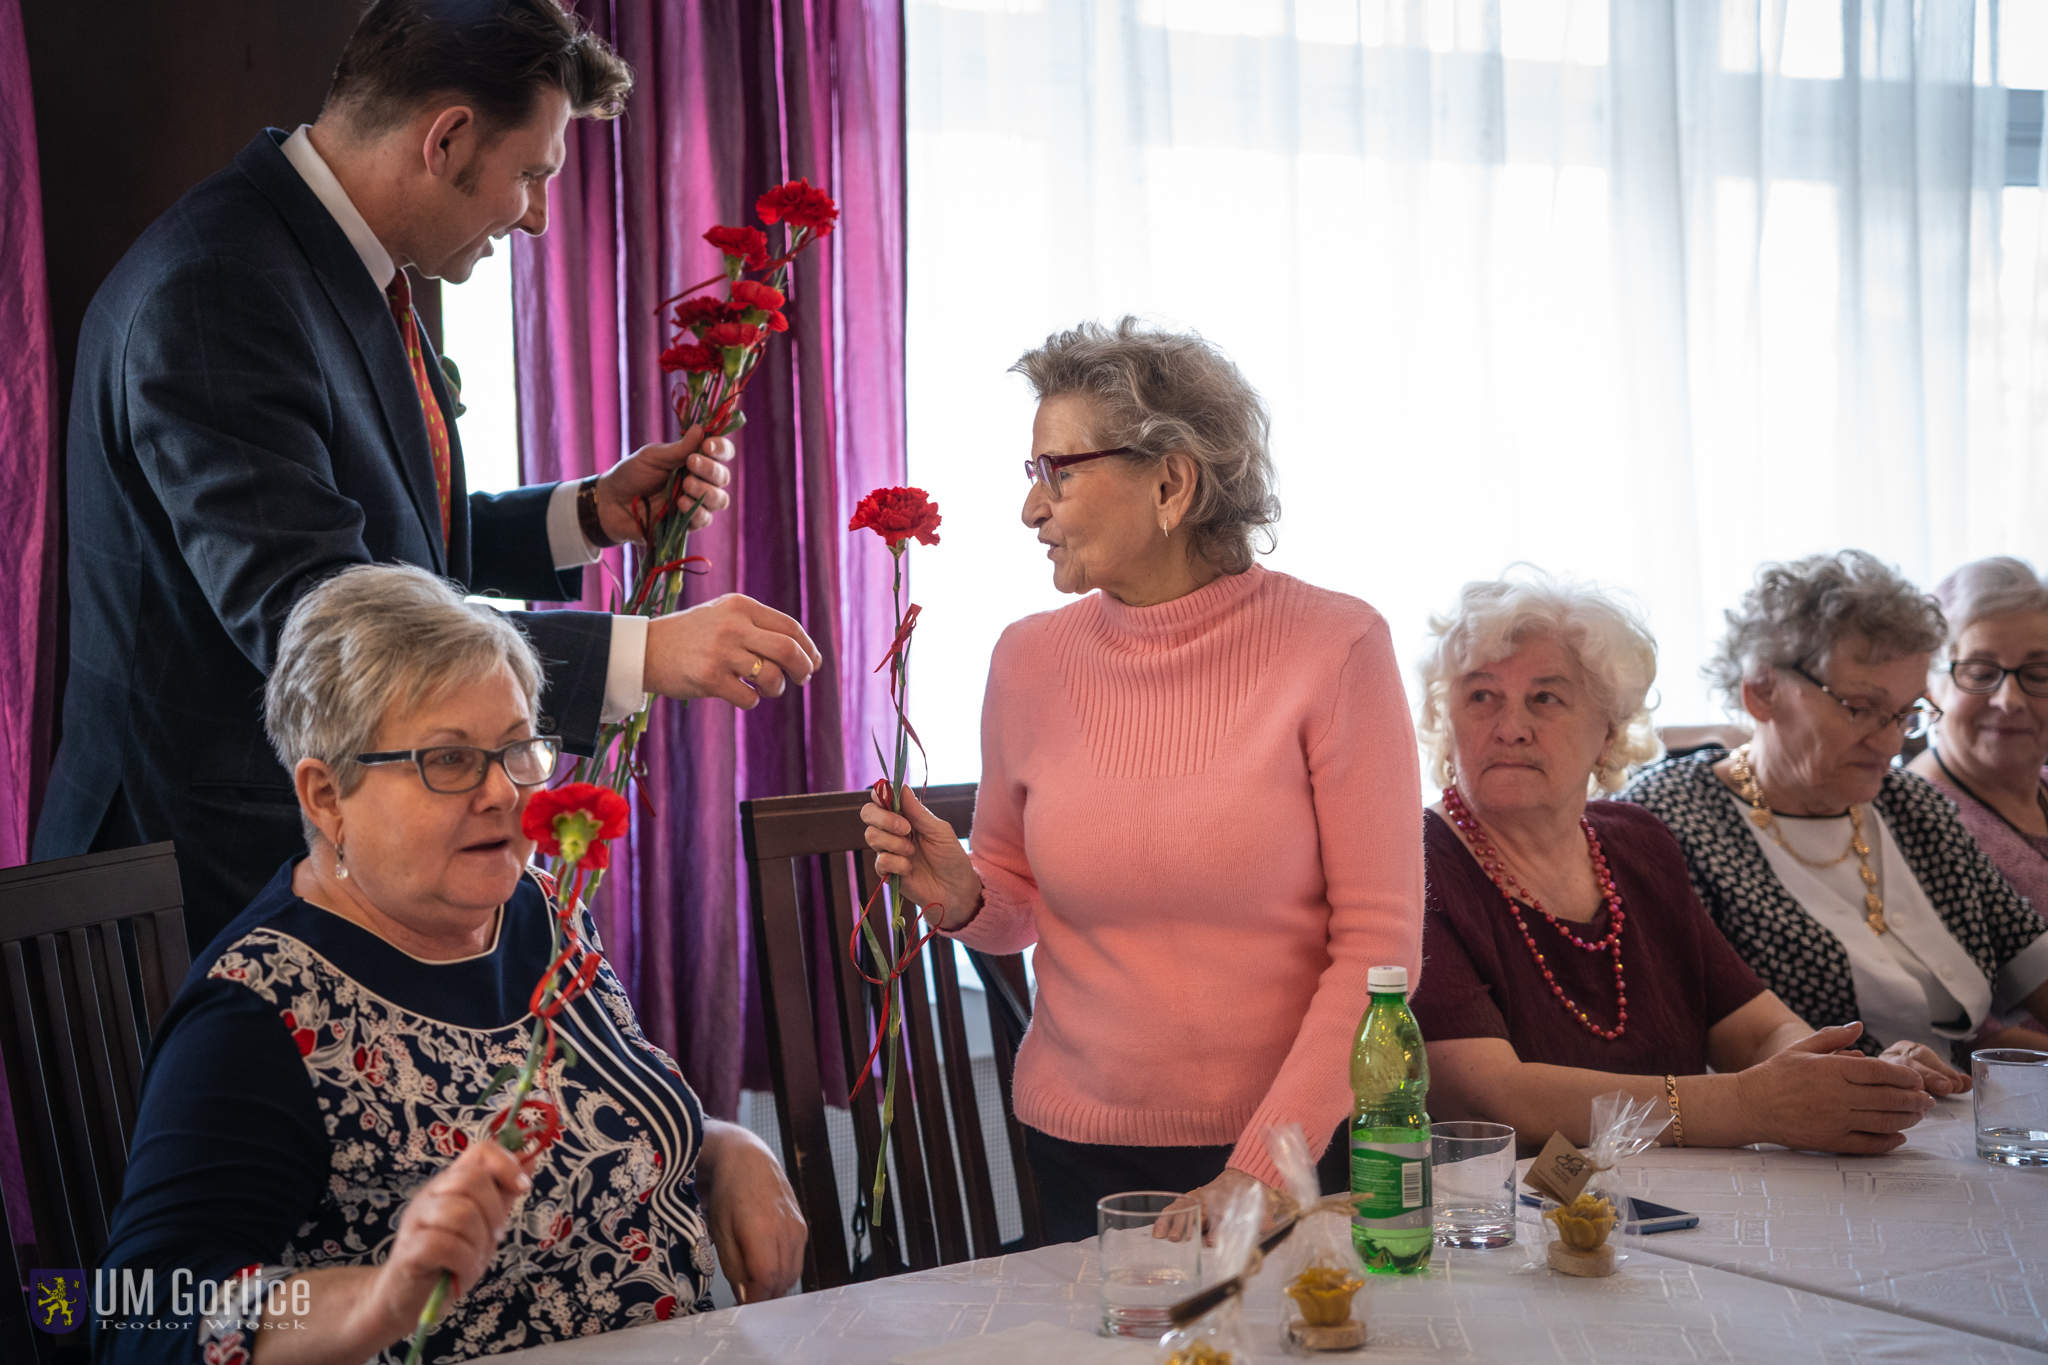 Burmistrz Rafał Kukla wręczający kwiaty z okazji Dnia Kobiet, podczas spotkania gorlickiego Stowarzyszenia Seniorów